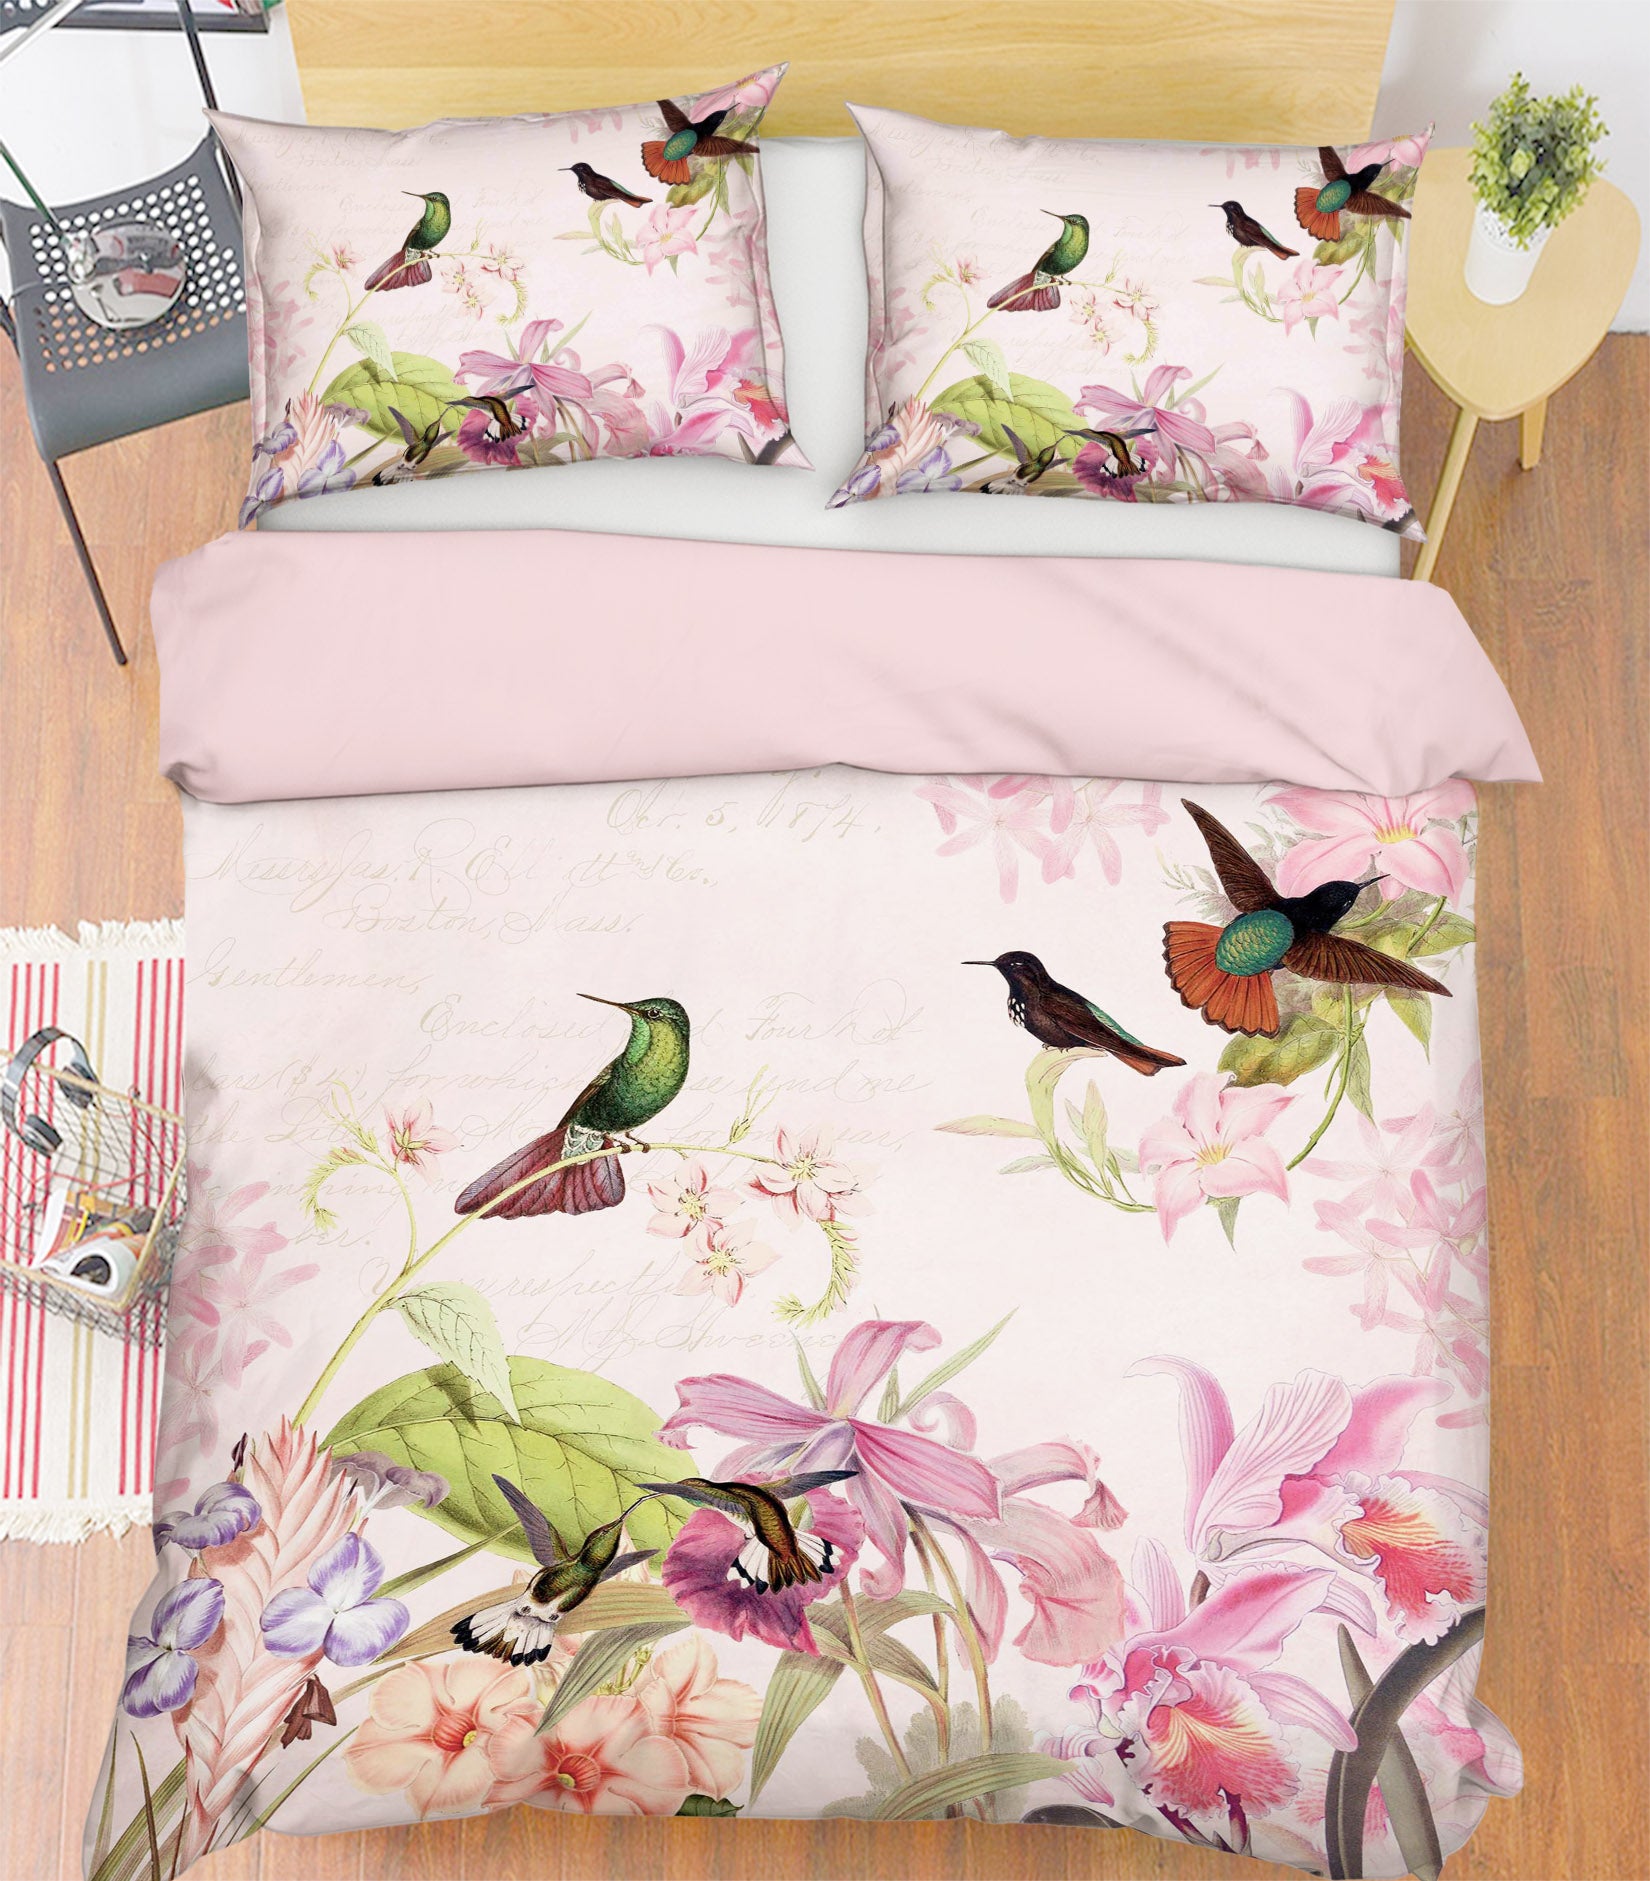 3D Kingfisher Flower 035 Uta Naumann Bedding Bed Pillowcases Quilt